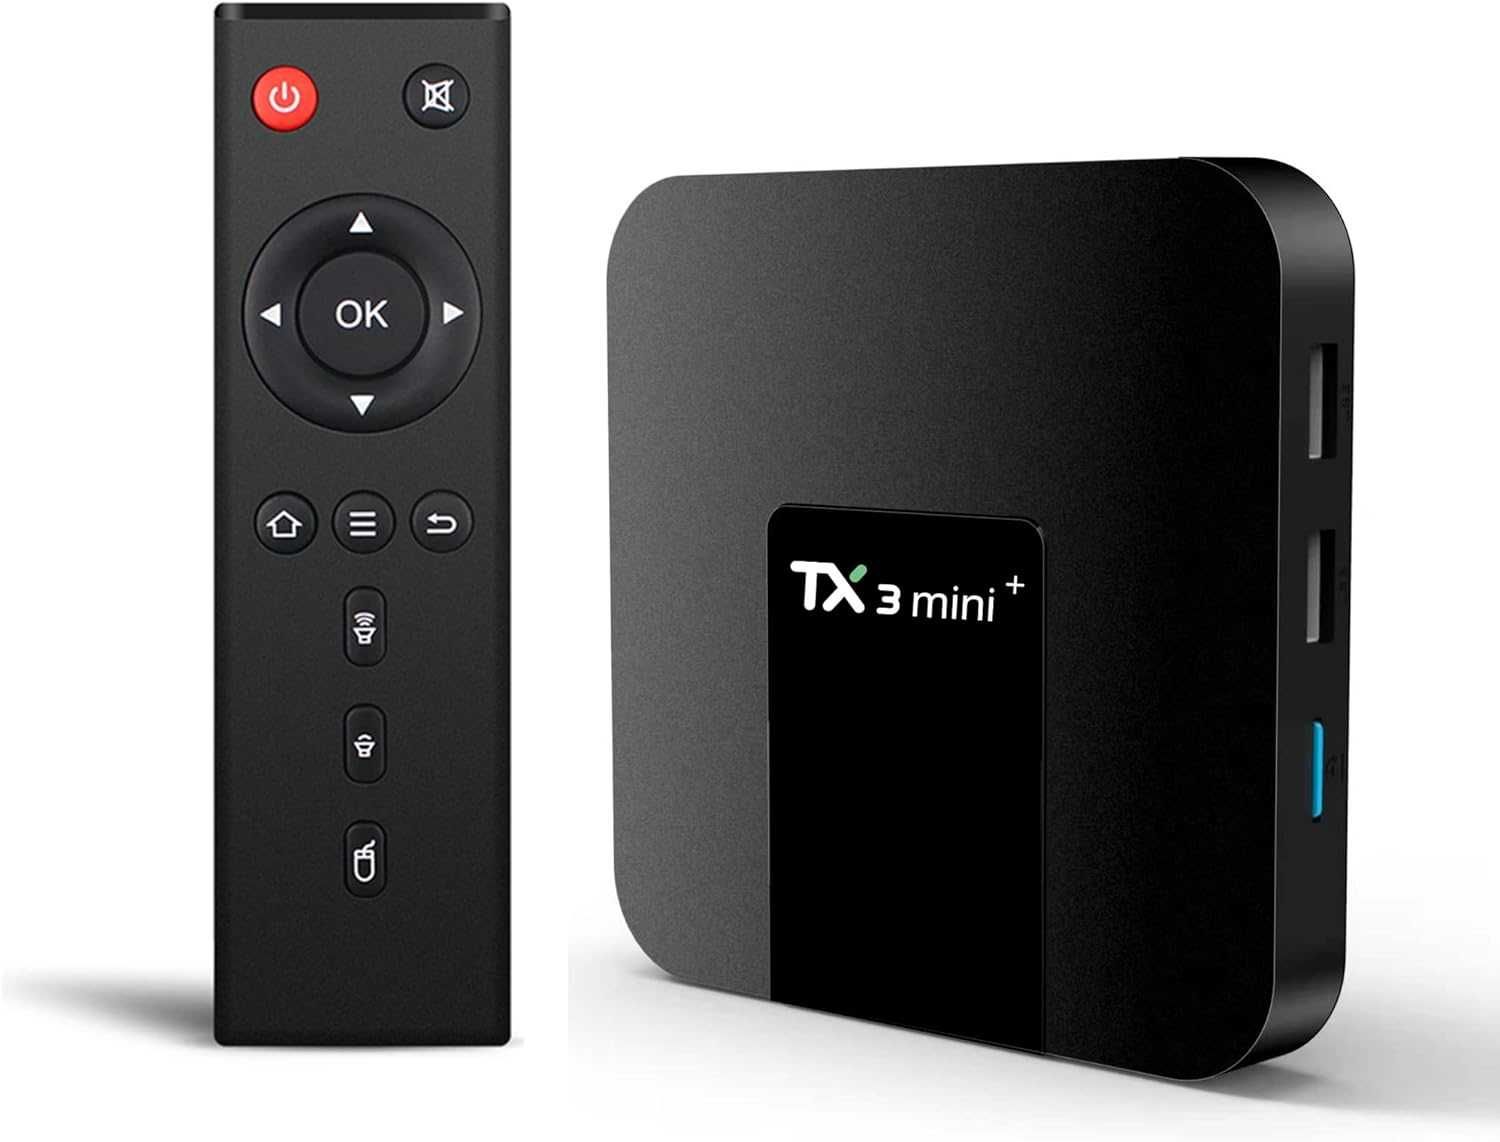 TV Box TX3 Mini+ 4K Android 11